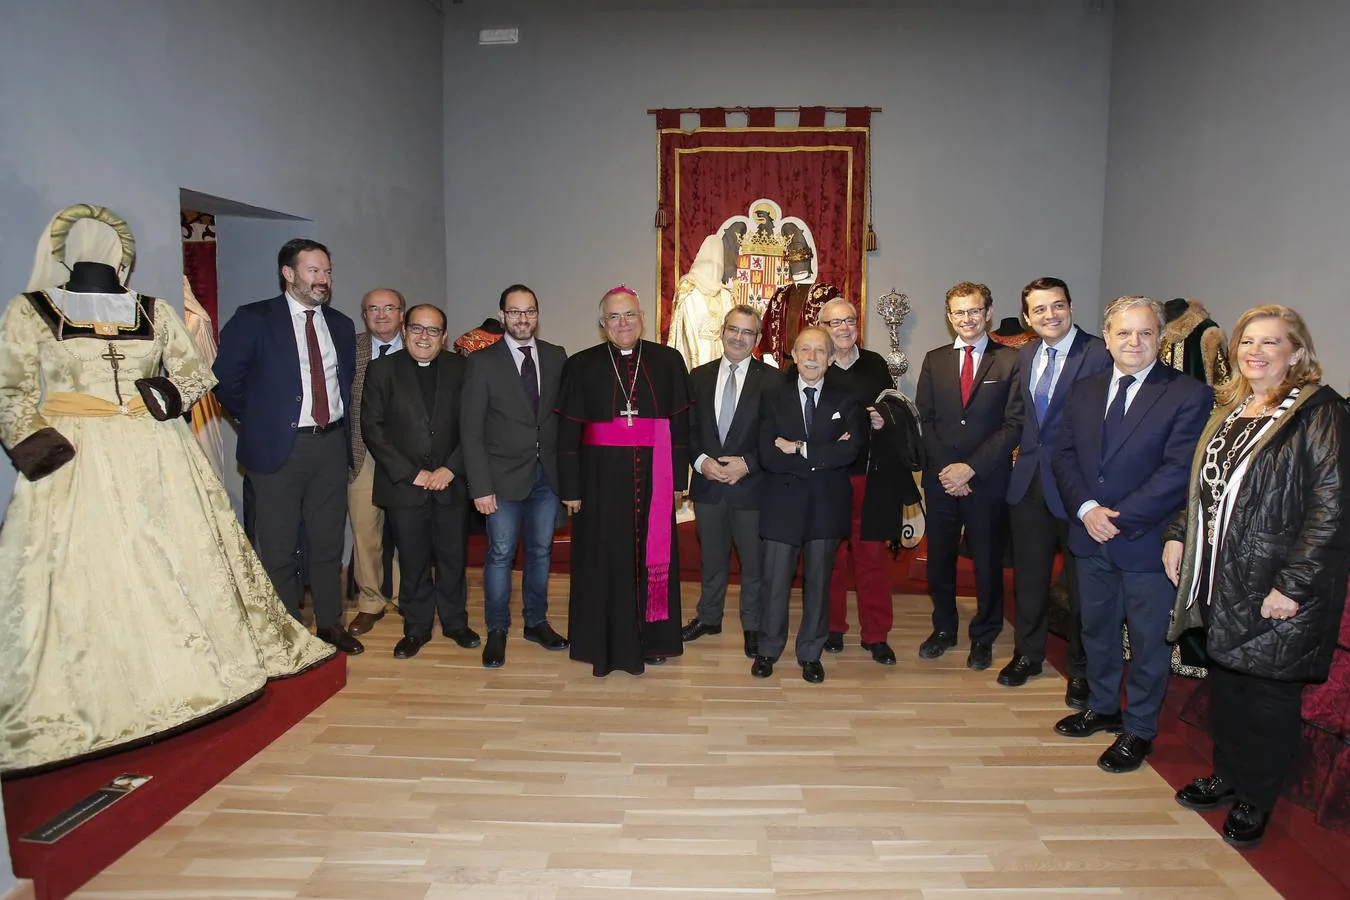 La exposición «Moda y época de Isabel la Católica en Córdoba», en imágenes